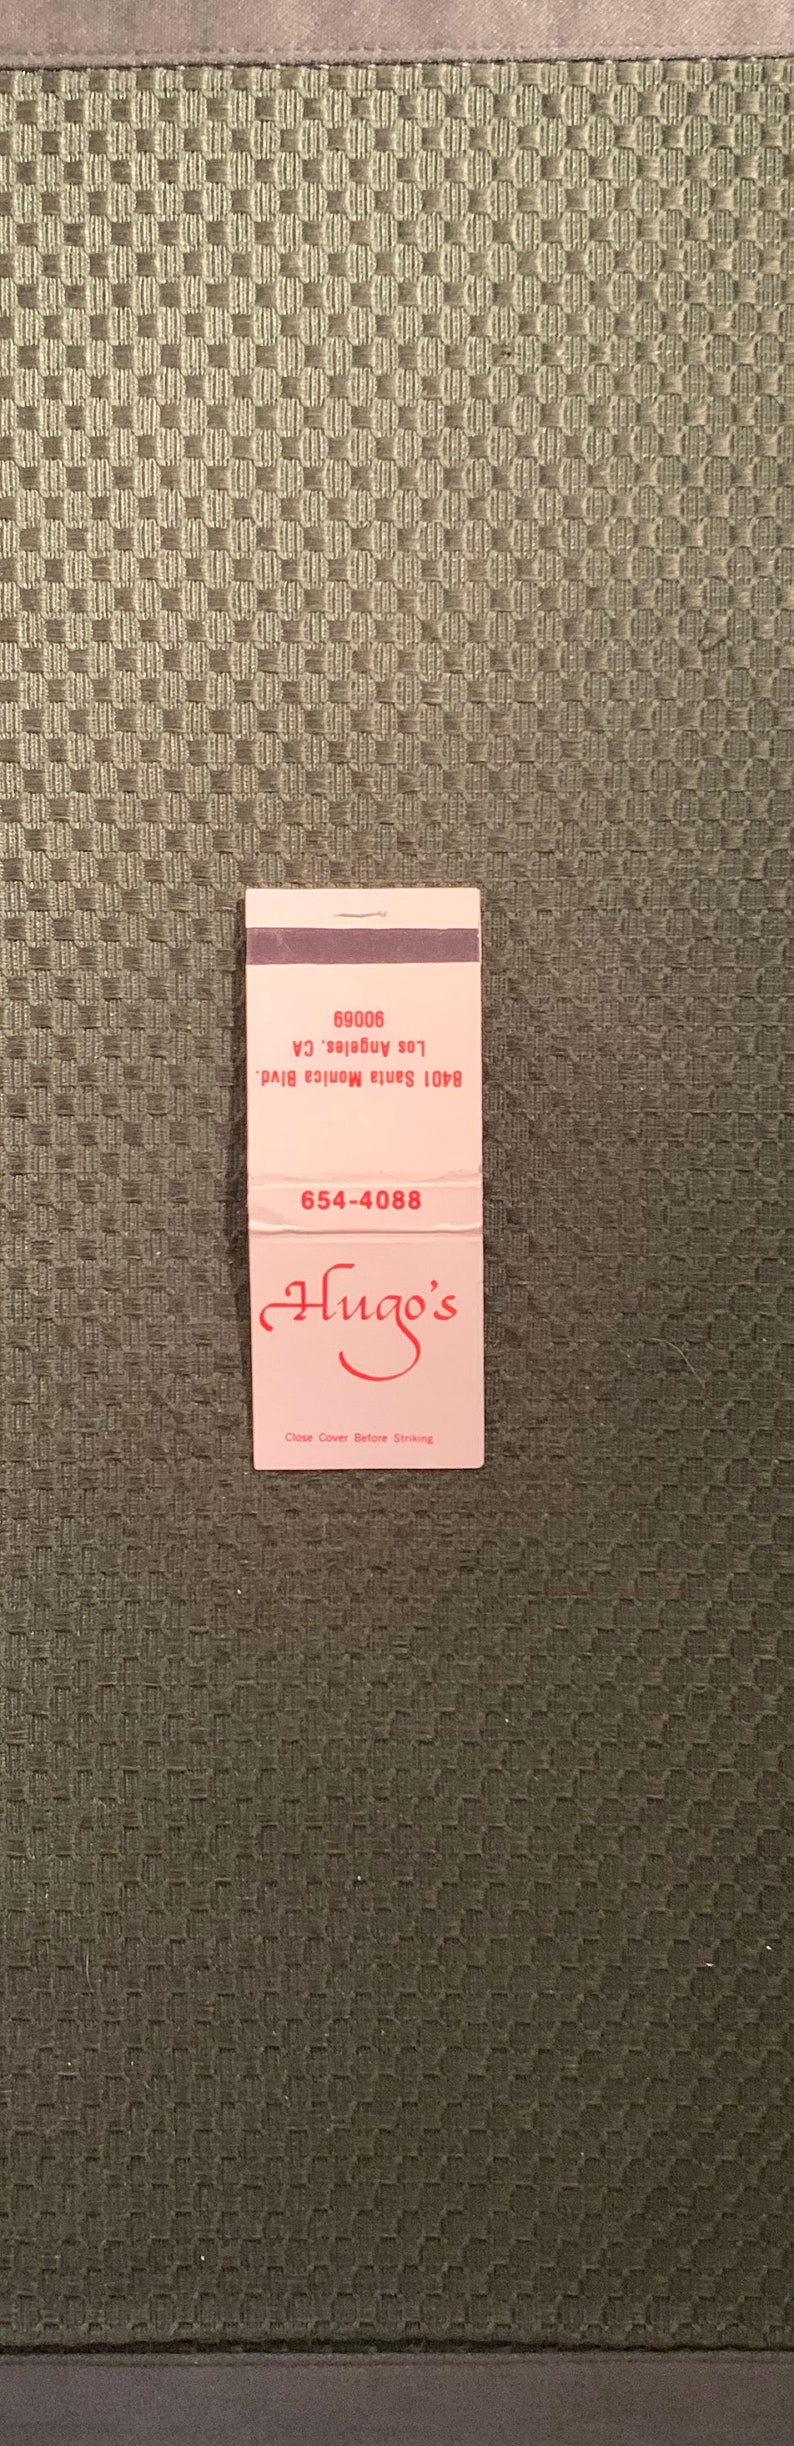 Vintage Matchbook Hugos Restaurant West Hollywood Los - Etsy